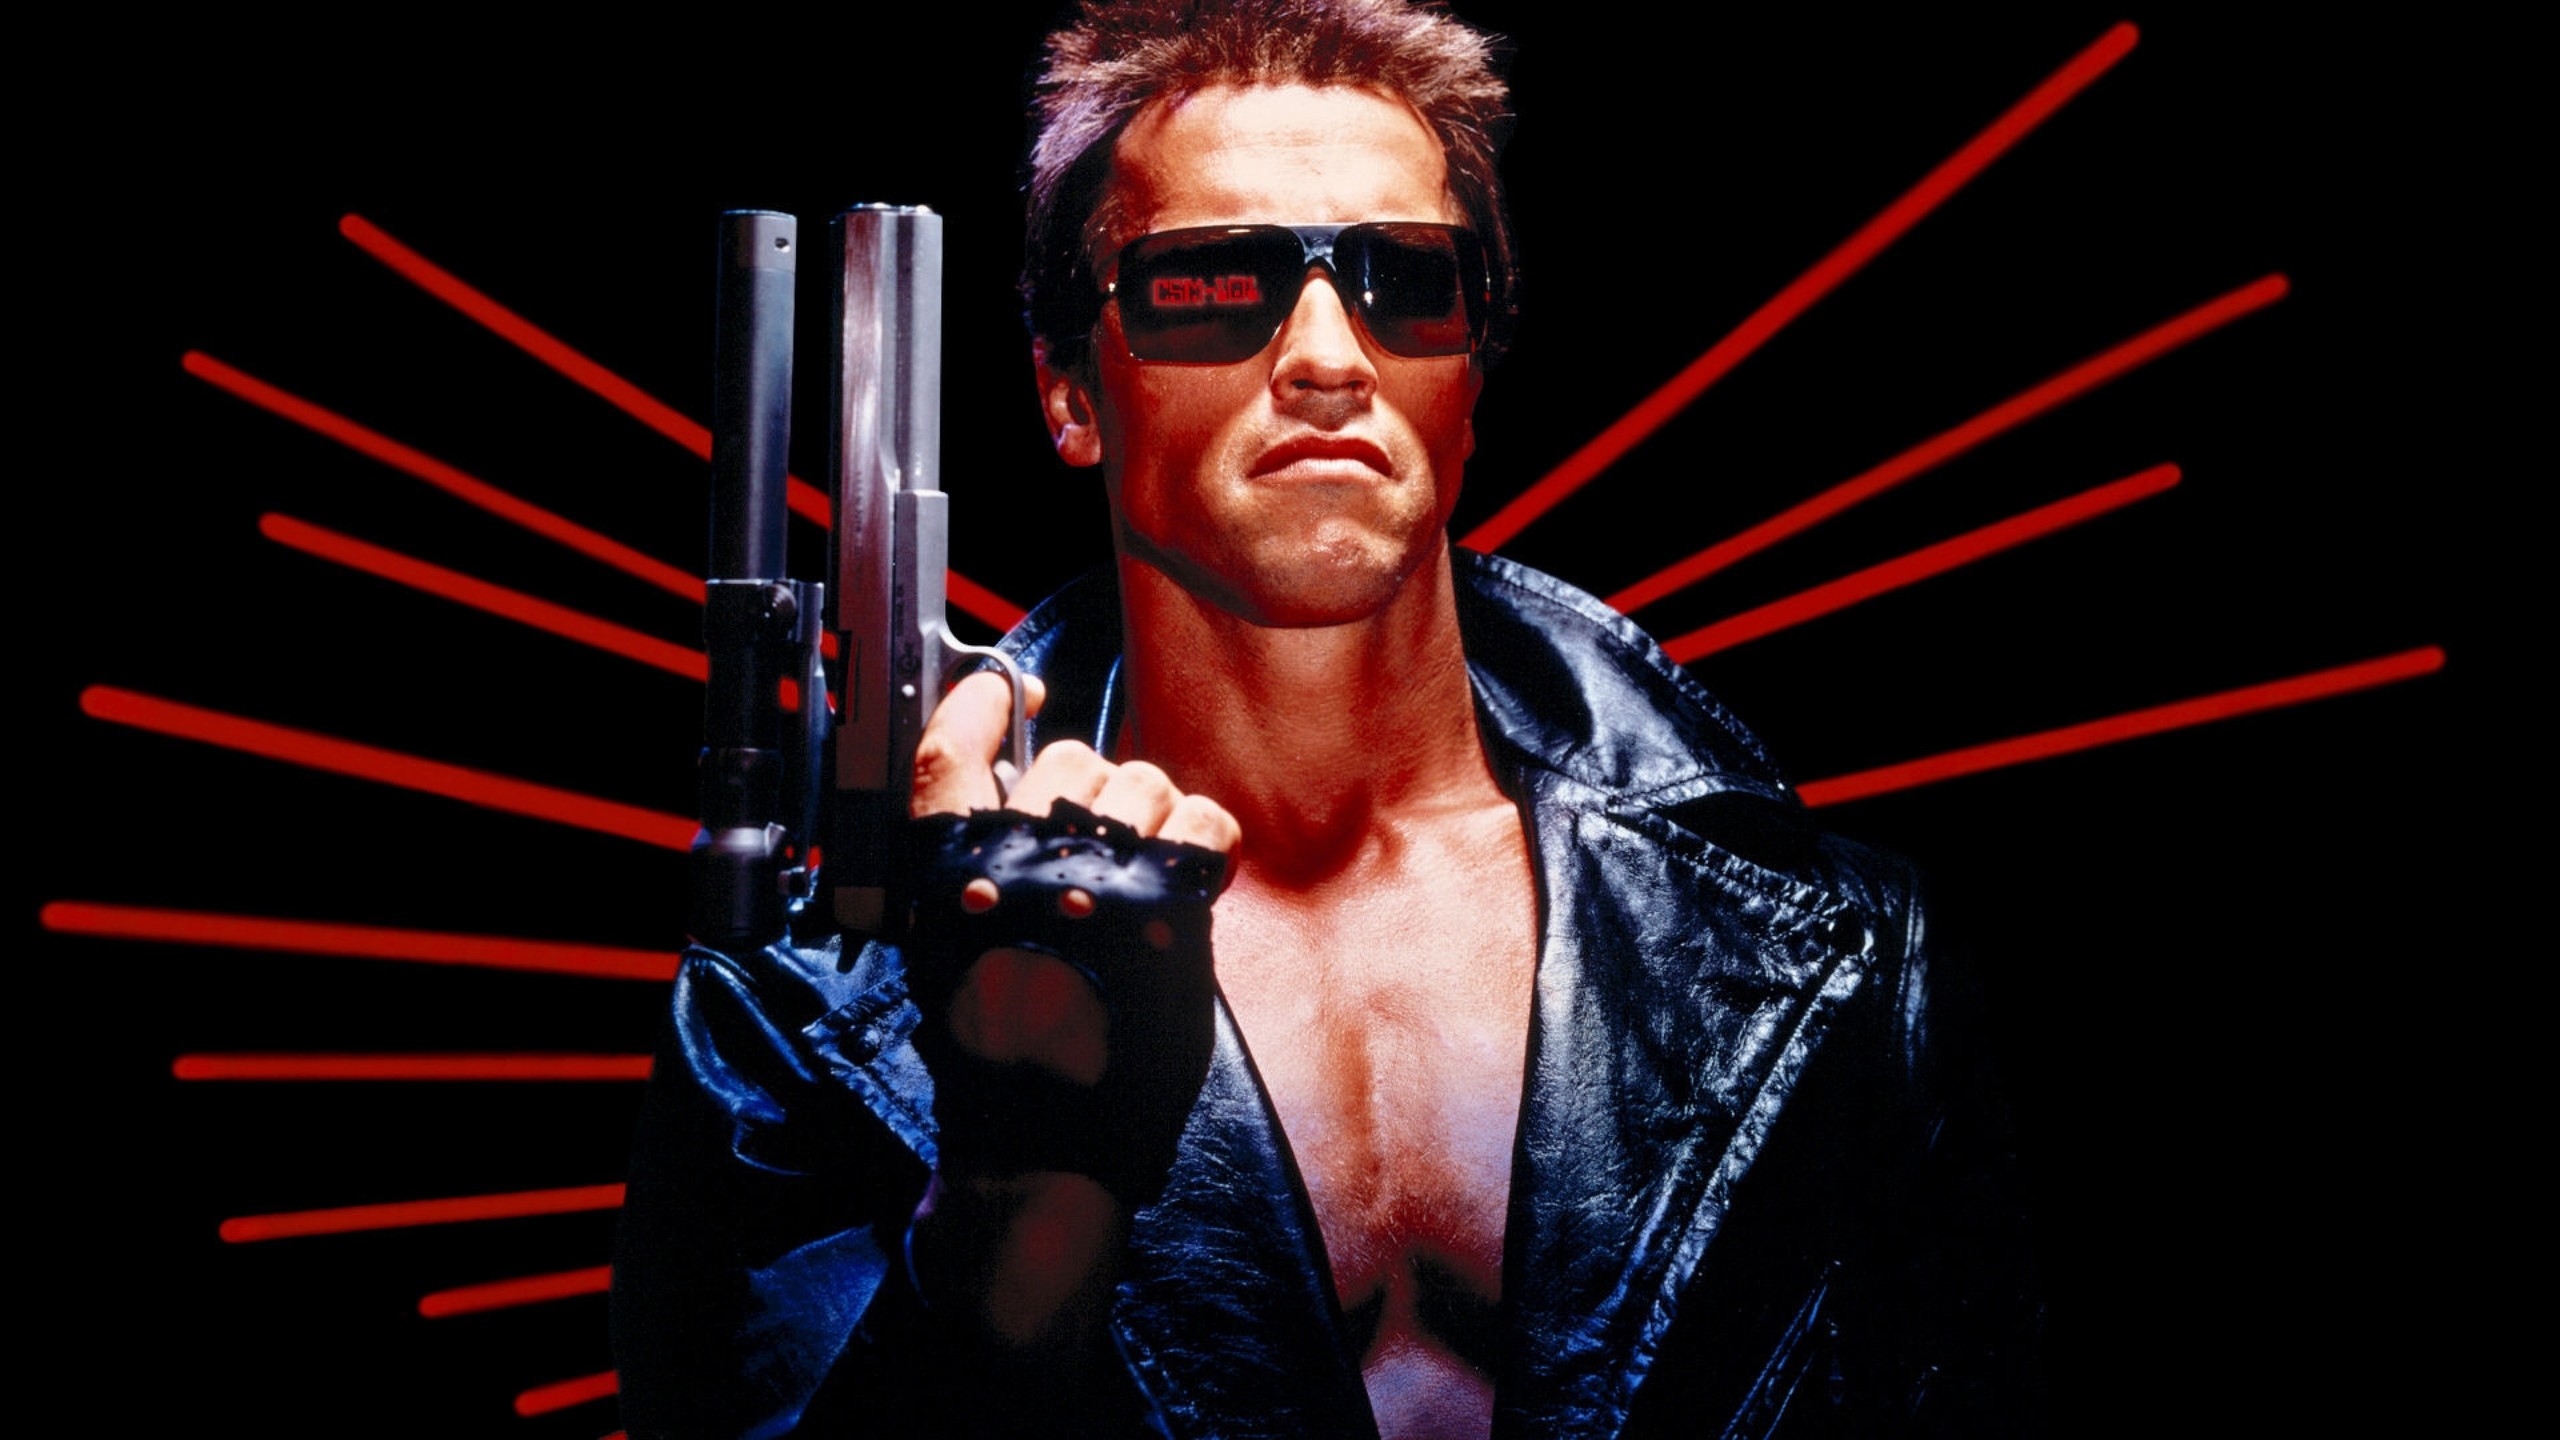  Terminator 2: Judgment Day (1991) 4K Restorasyonlu Olarak 25 Ağustos 2017 Vizyonda